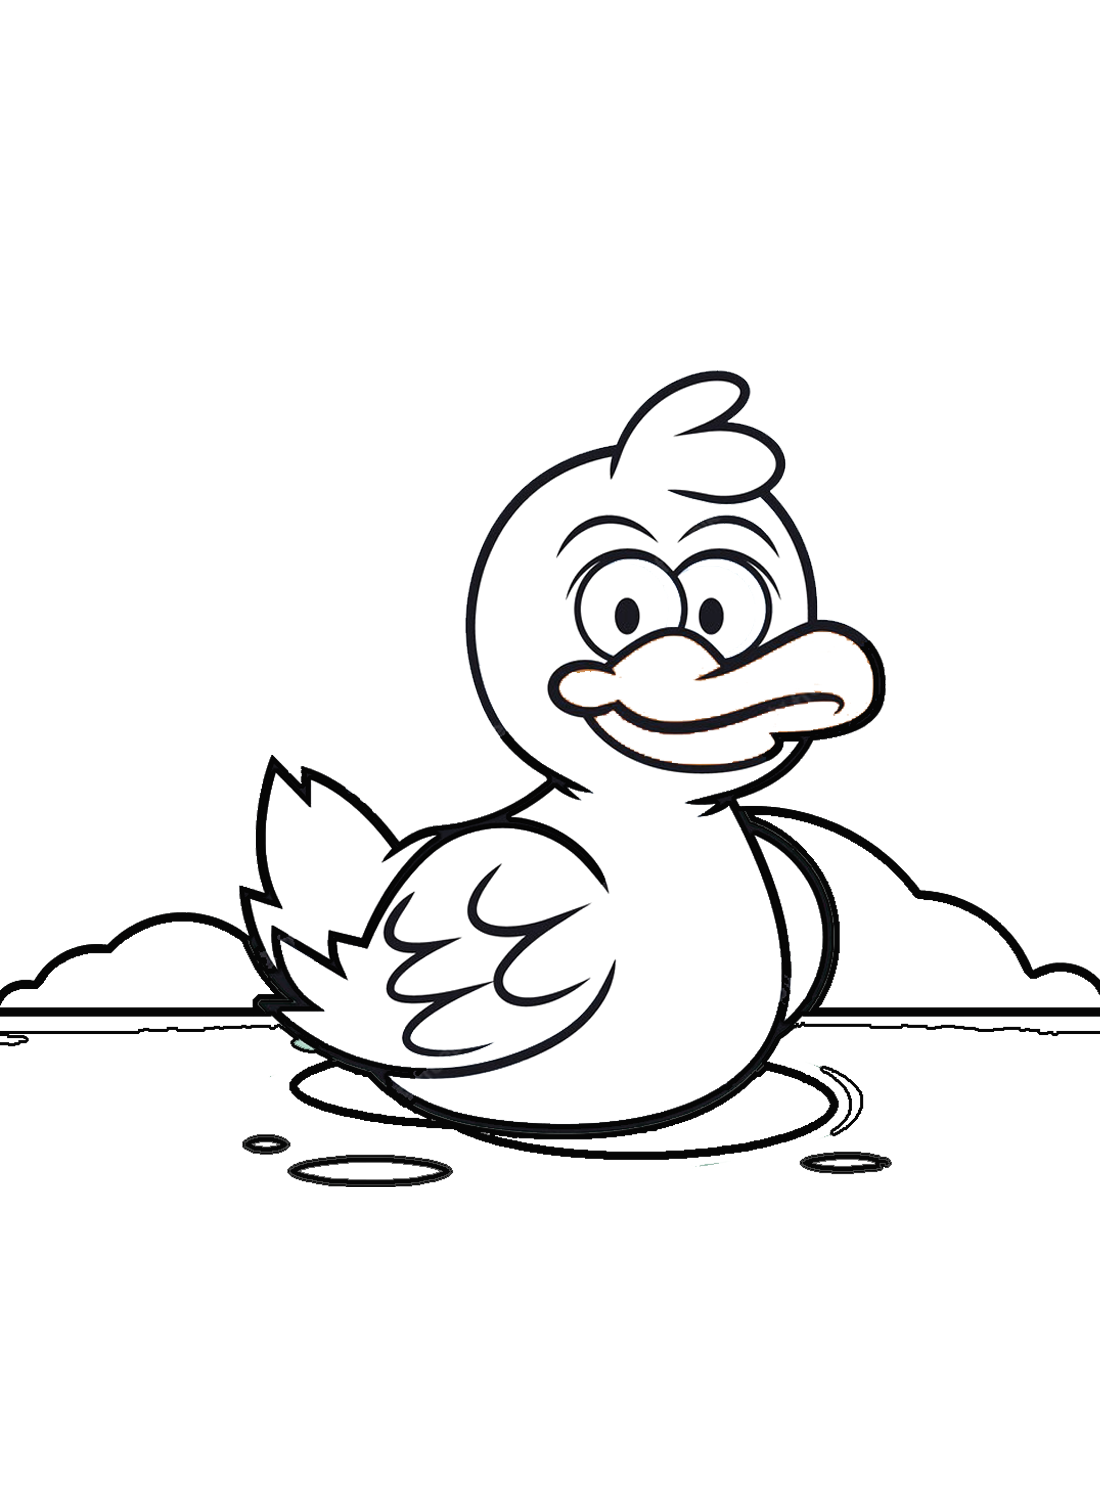 Ein lustiges Entlein von Duckling